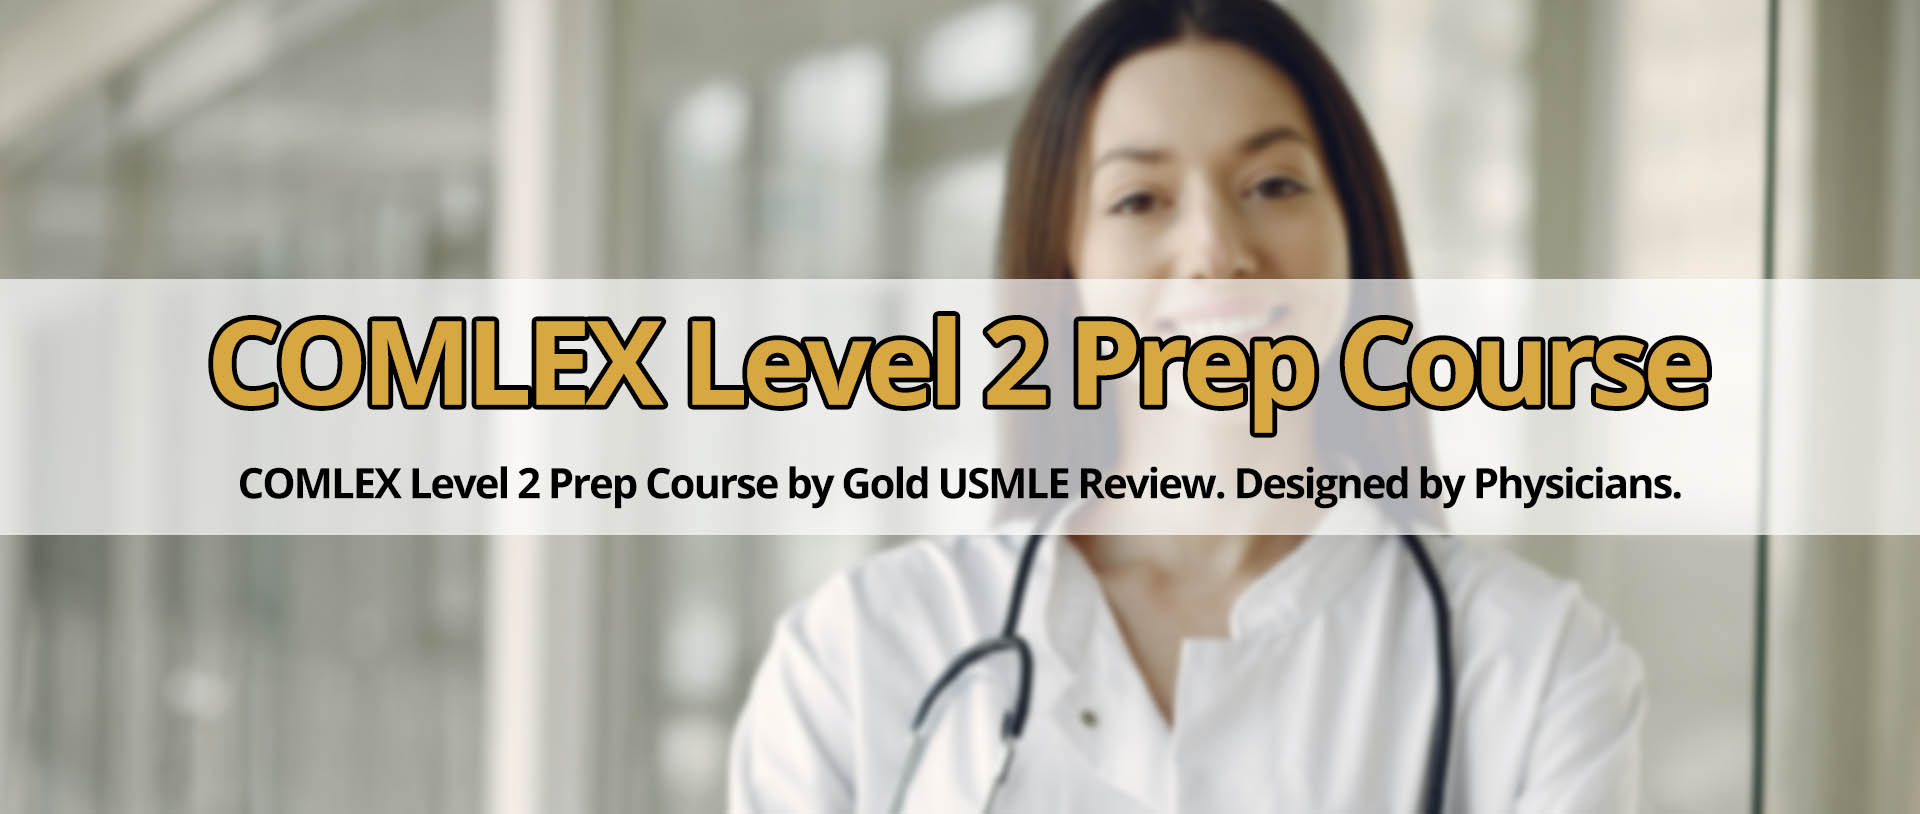 COMLEX Level 2 Prep Course